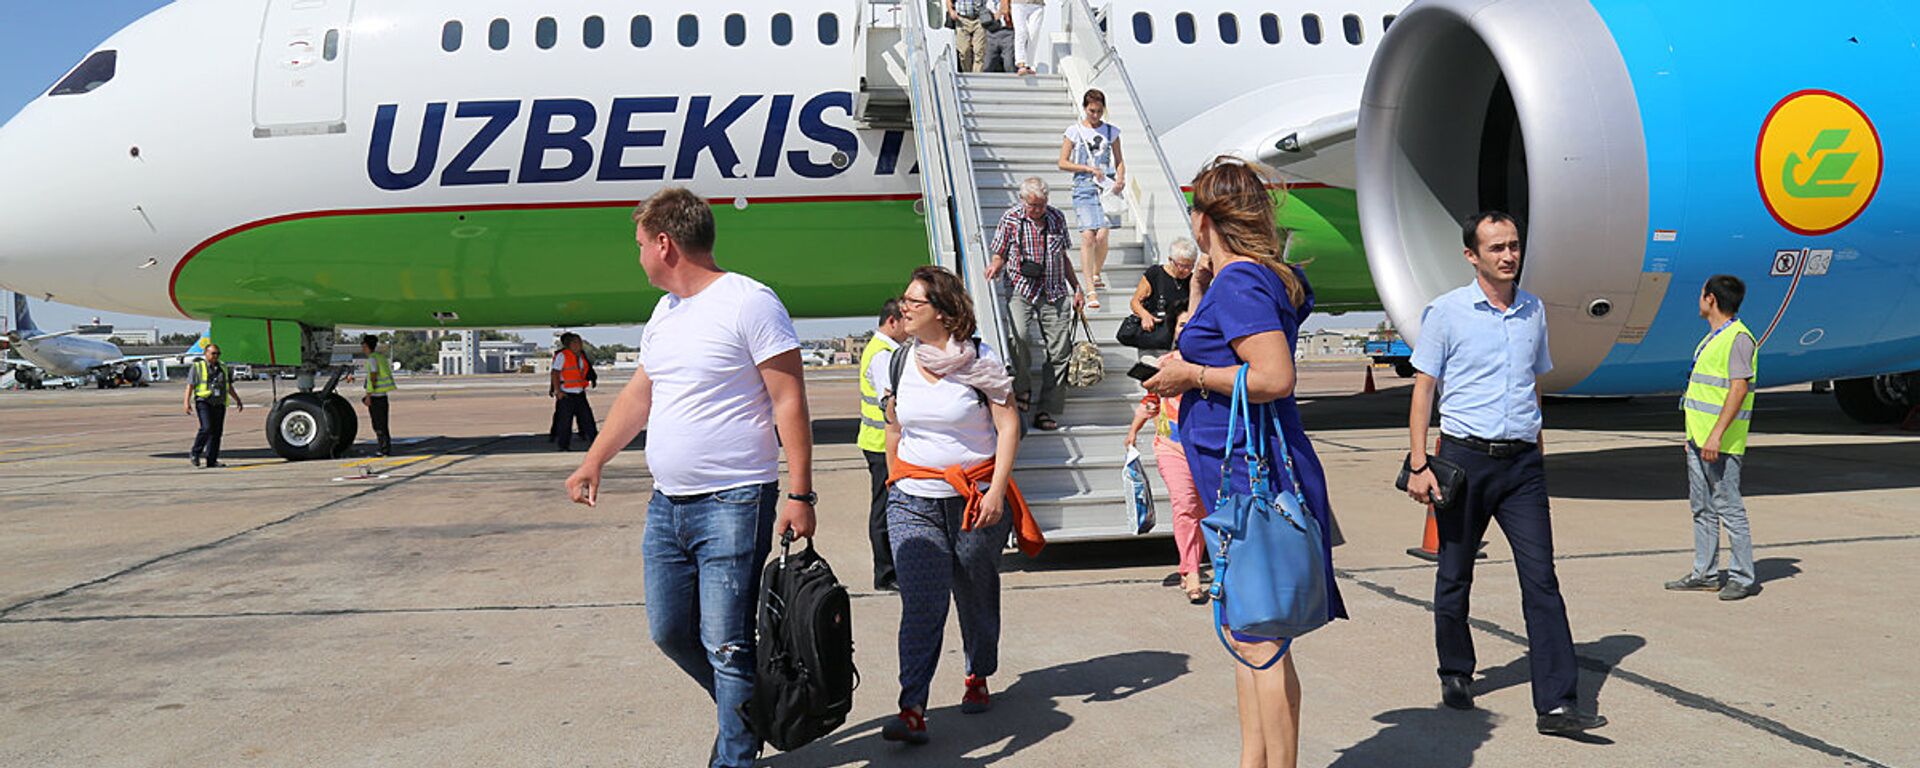 Пассажиры выходят из самолета узбекских авиалиний - Sputnik Узбекистан, 1920, 08.09.2017